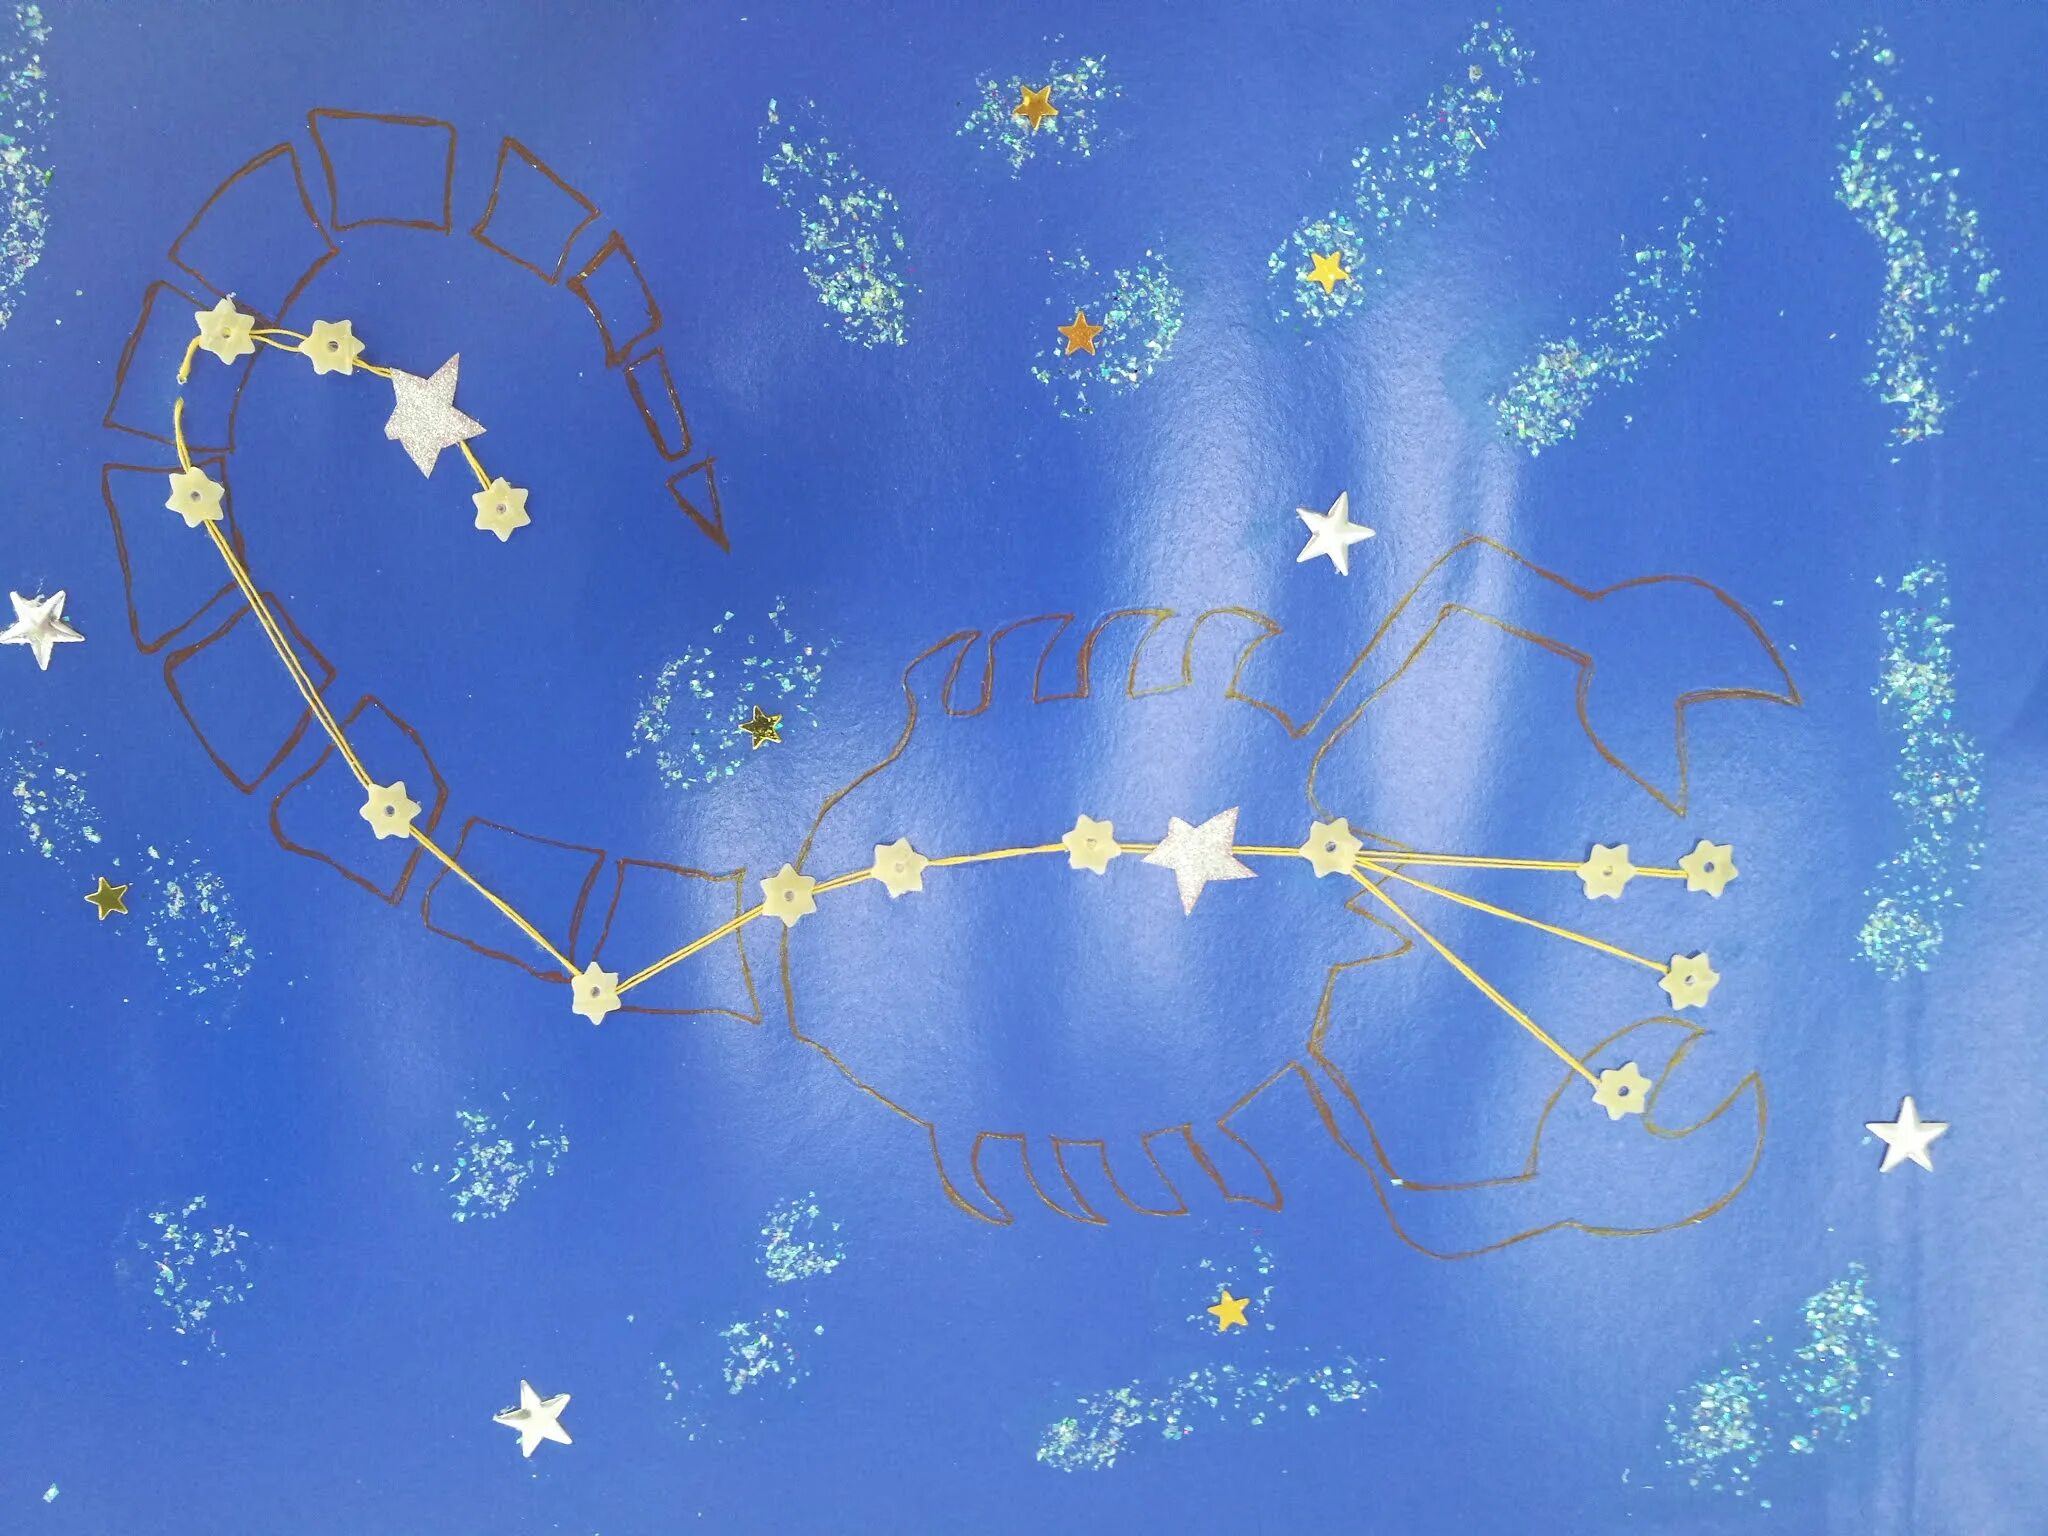 Созвездие фигурное. Созвездие Орион Лев лебедь Кассиопея большая Медведица. Модель созвездия Орион. Модель созвездия большой медведицы из пластилина. Поделка Созвездие.